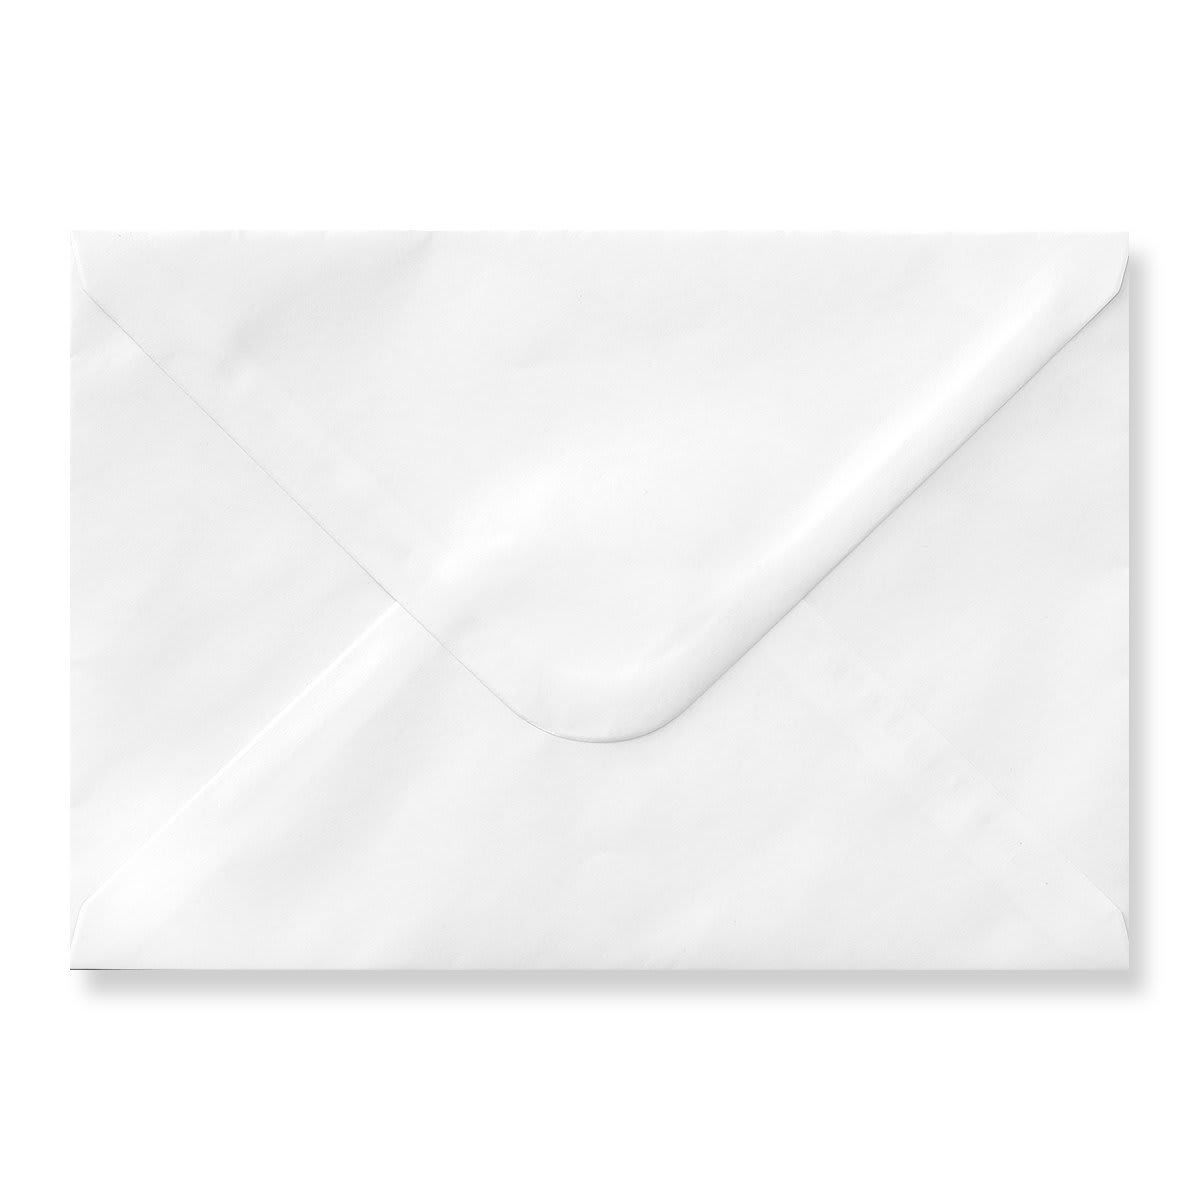 White 155 x 220mm Envelopes 120gsm